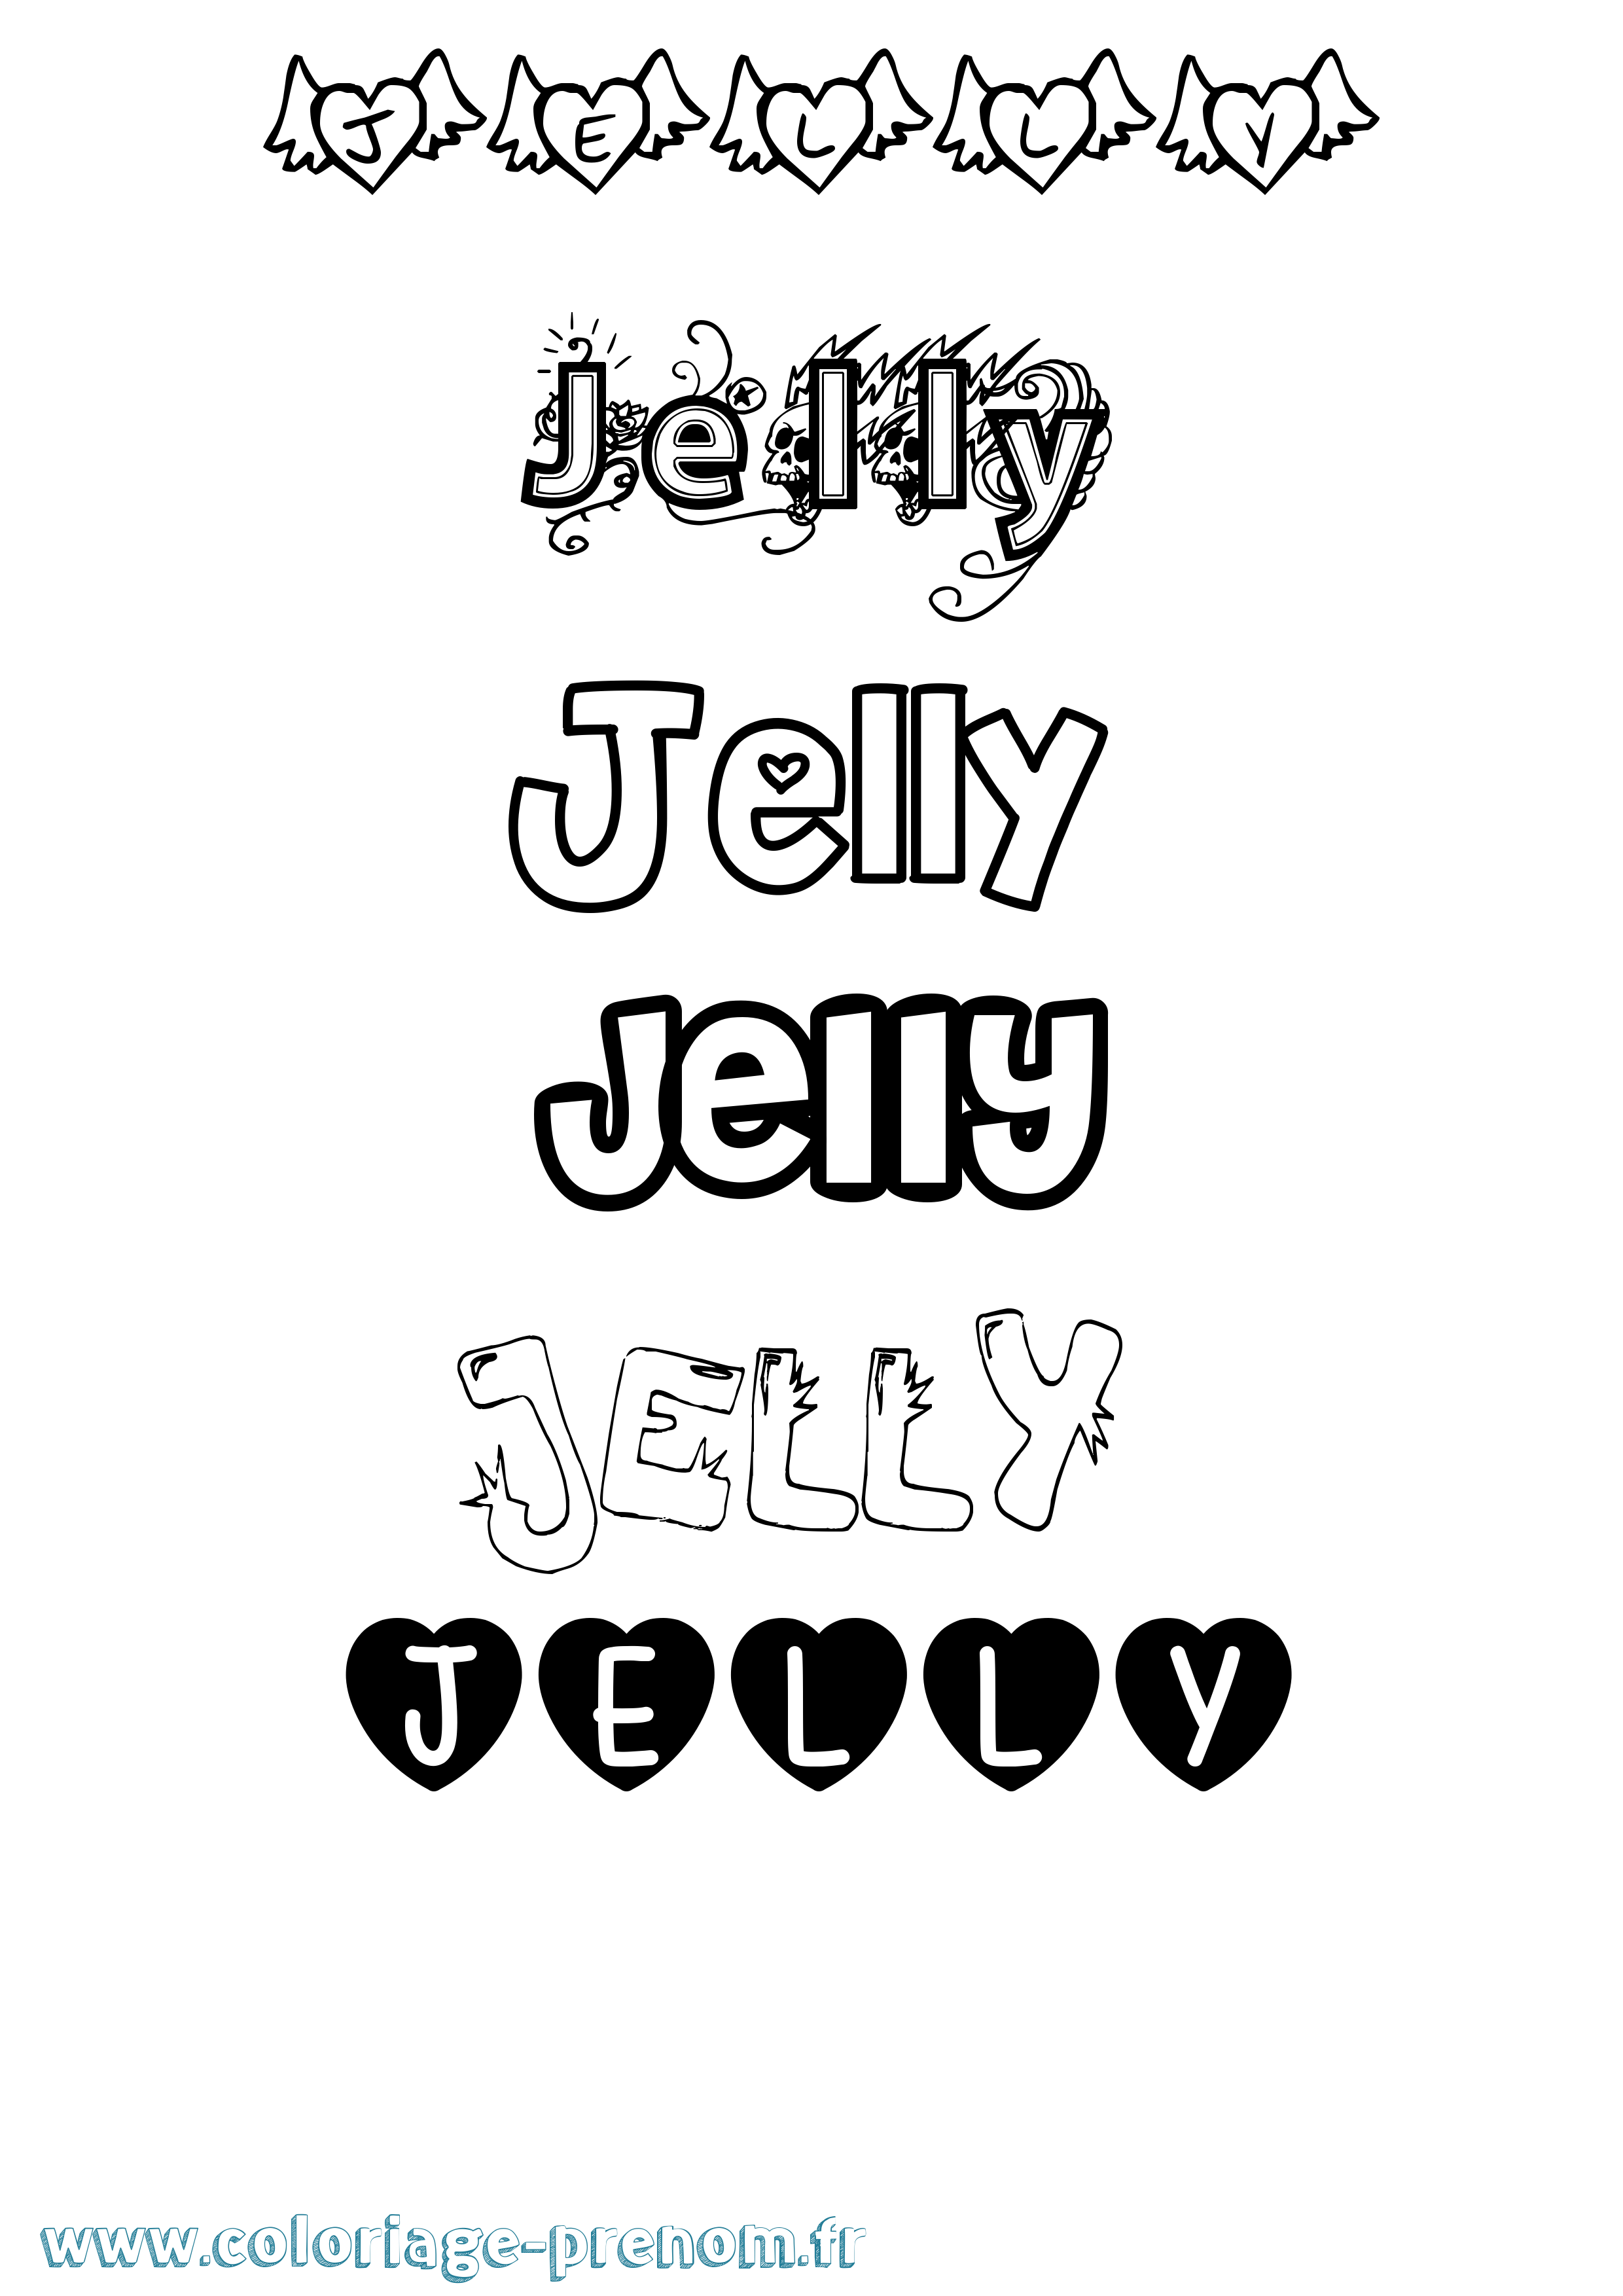 Coloriage prénom Jelly Girly